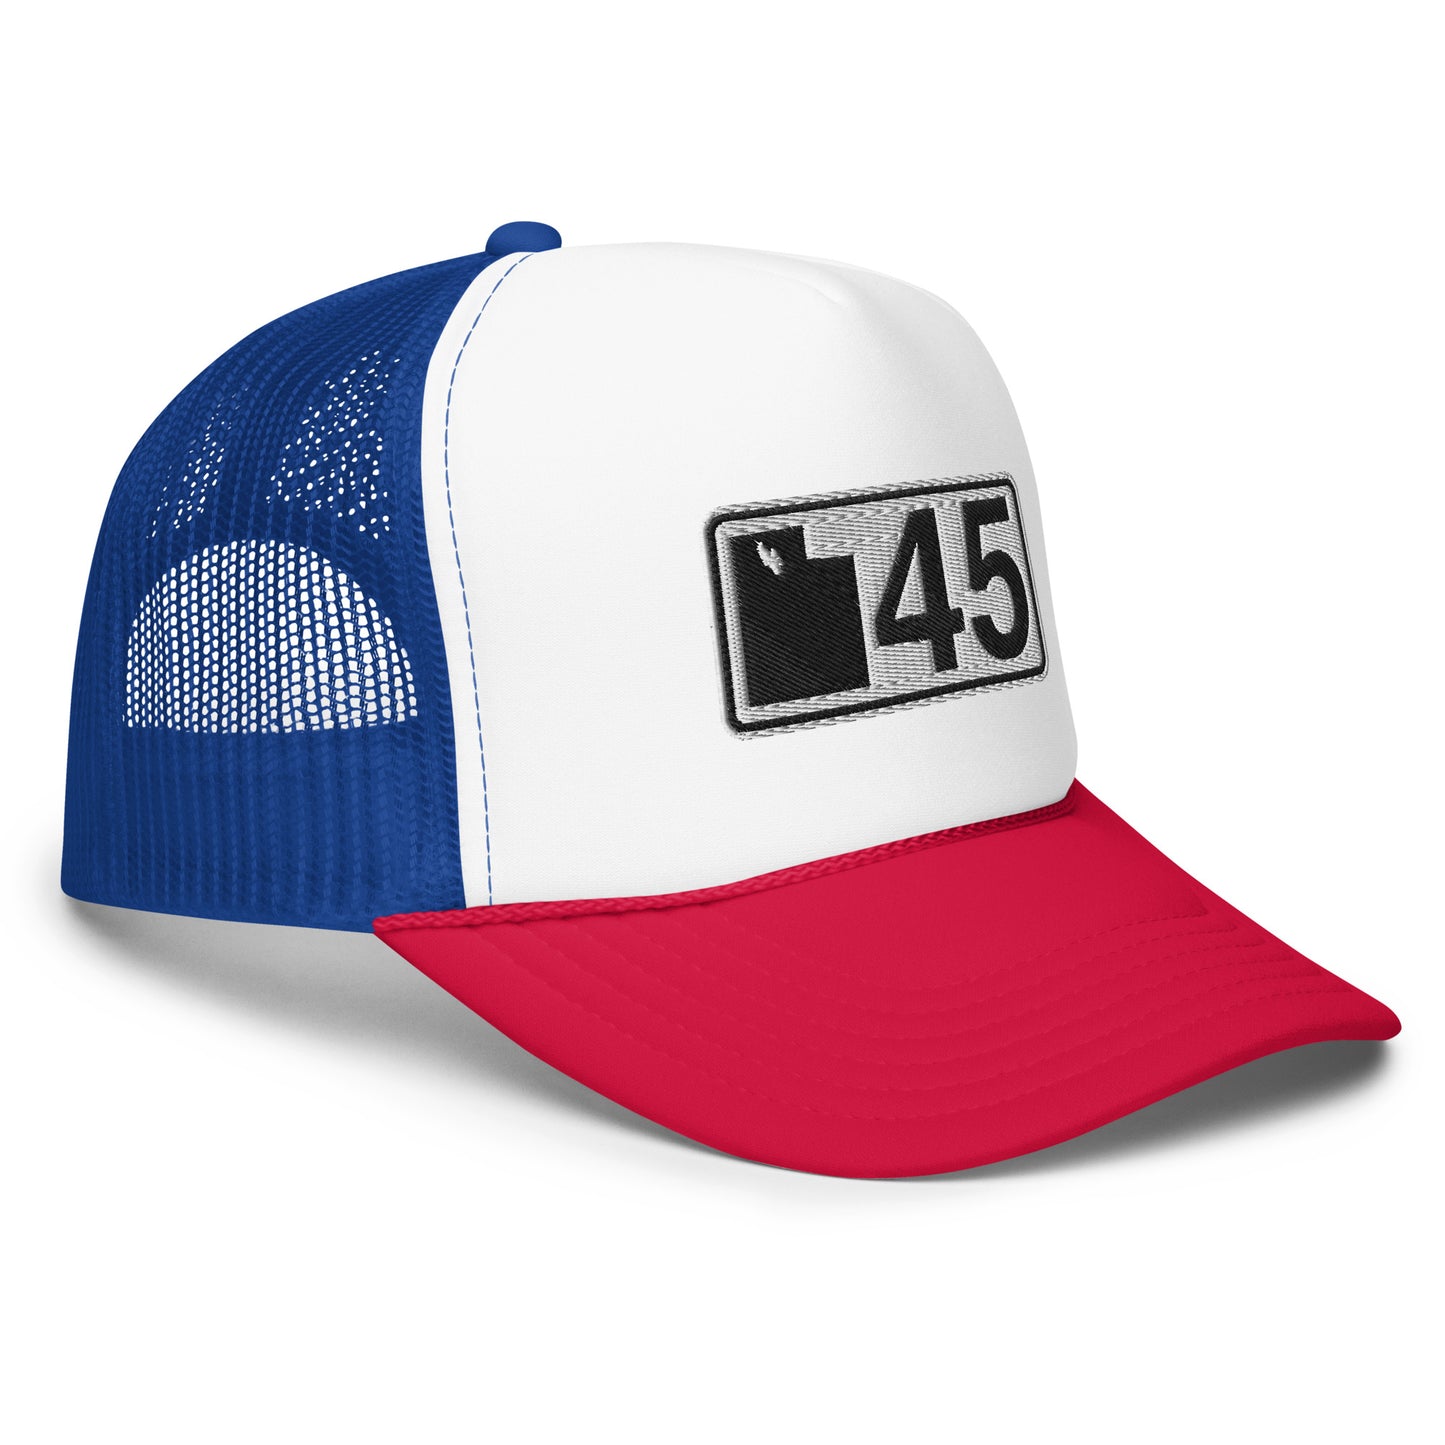 UT45 Logo Trucker Hat